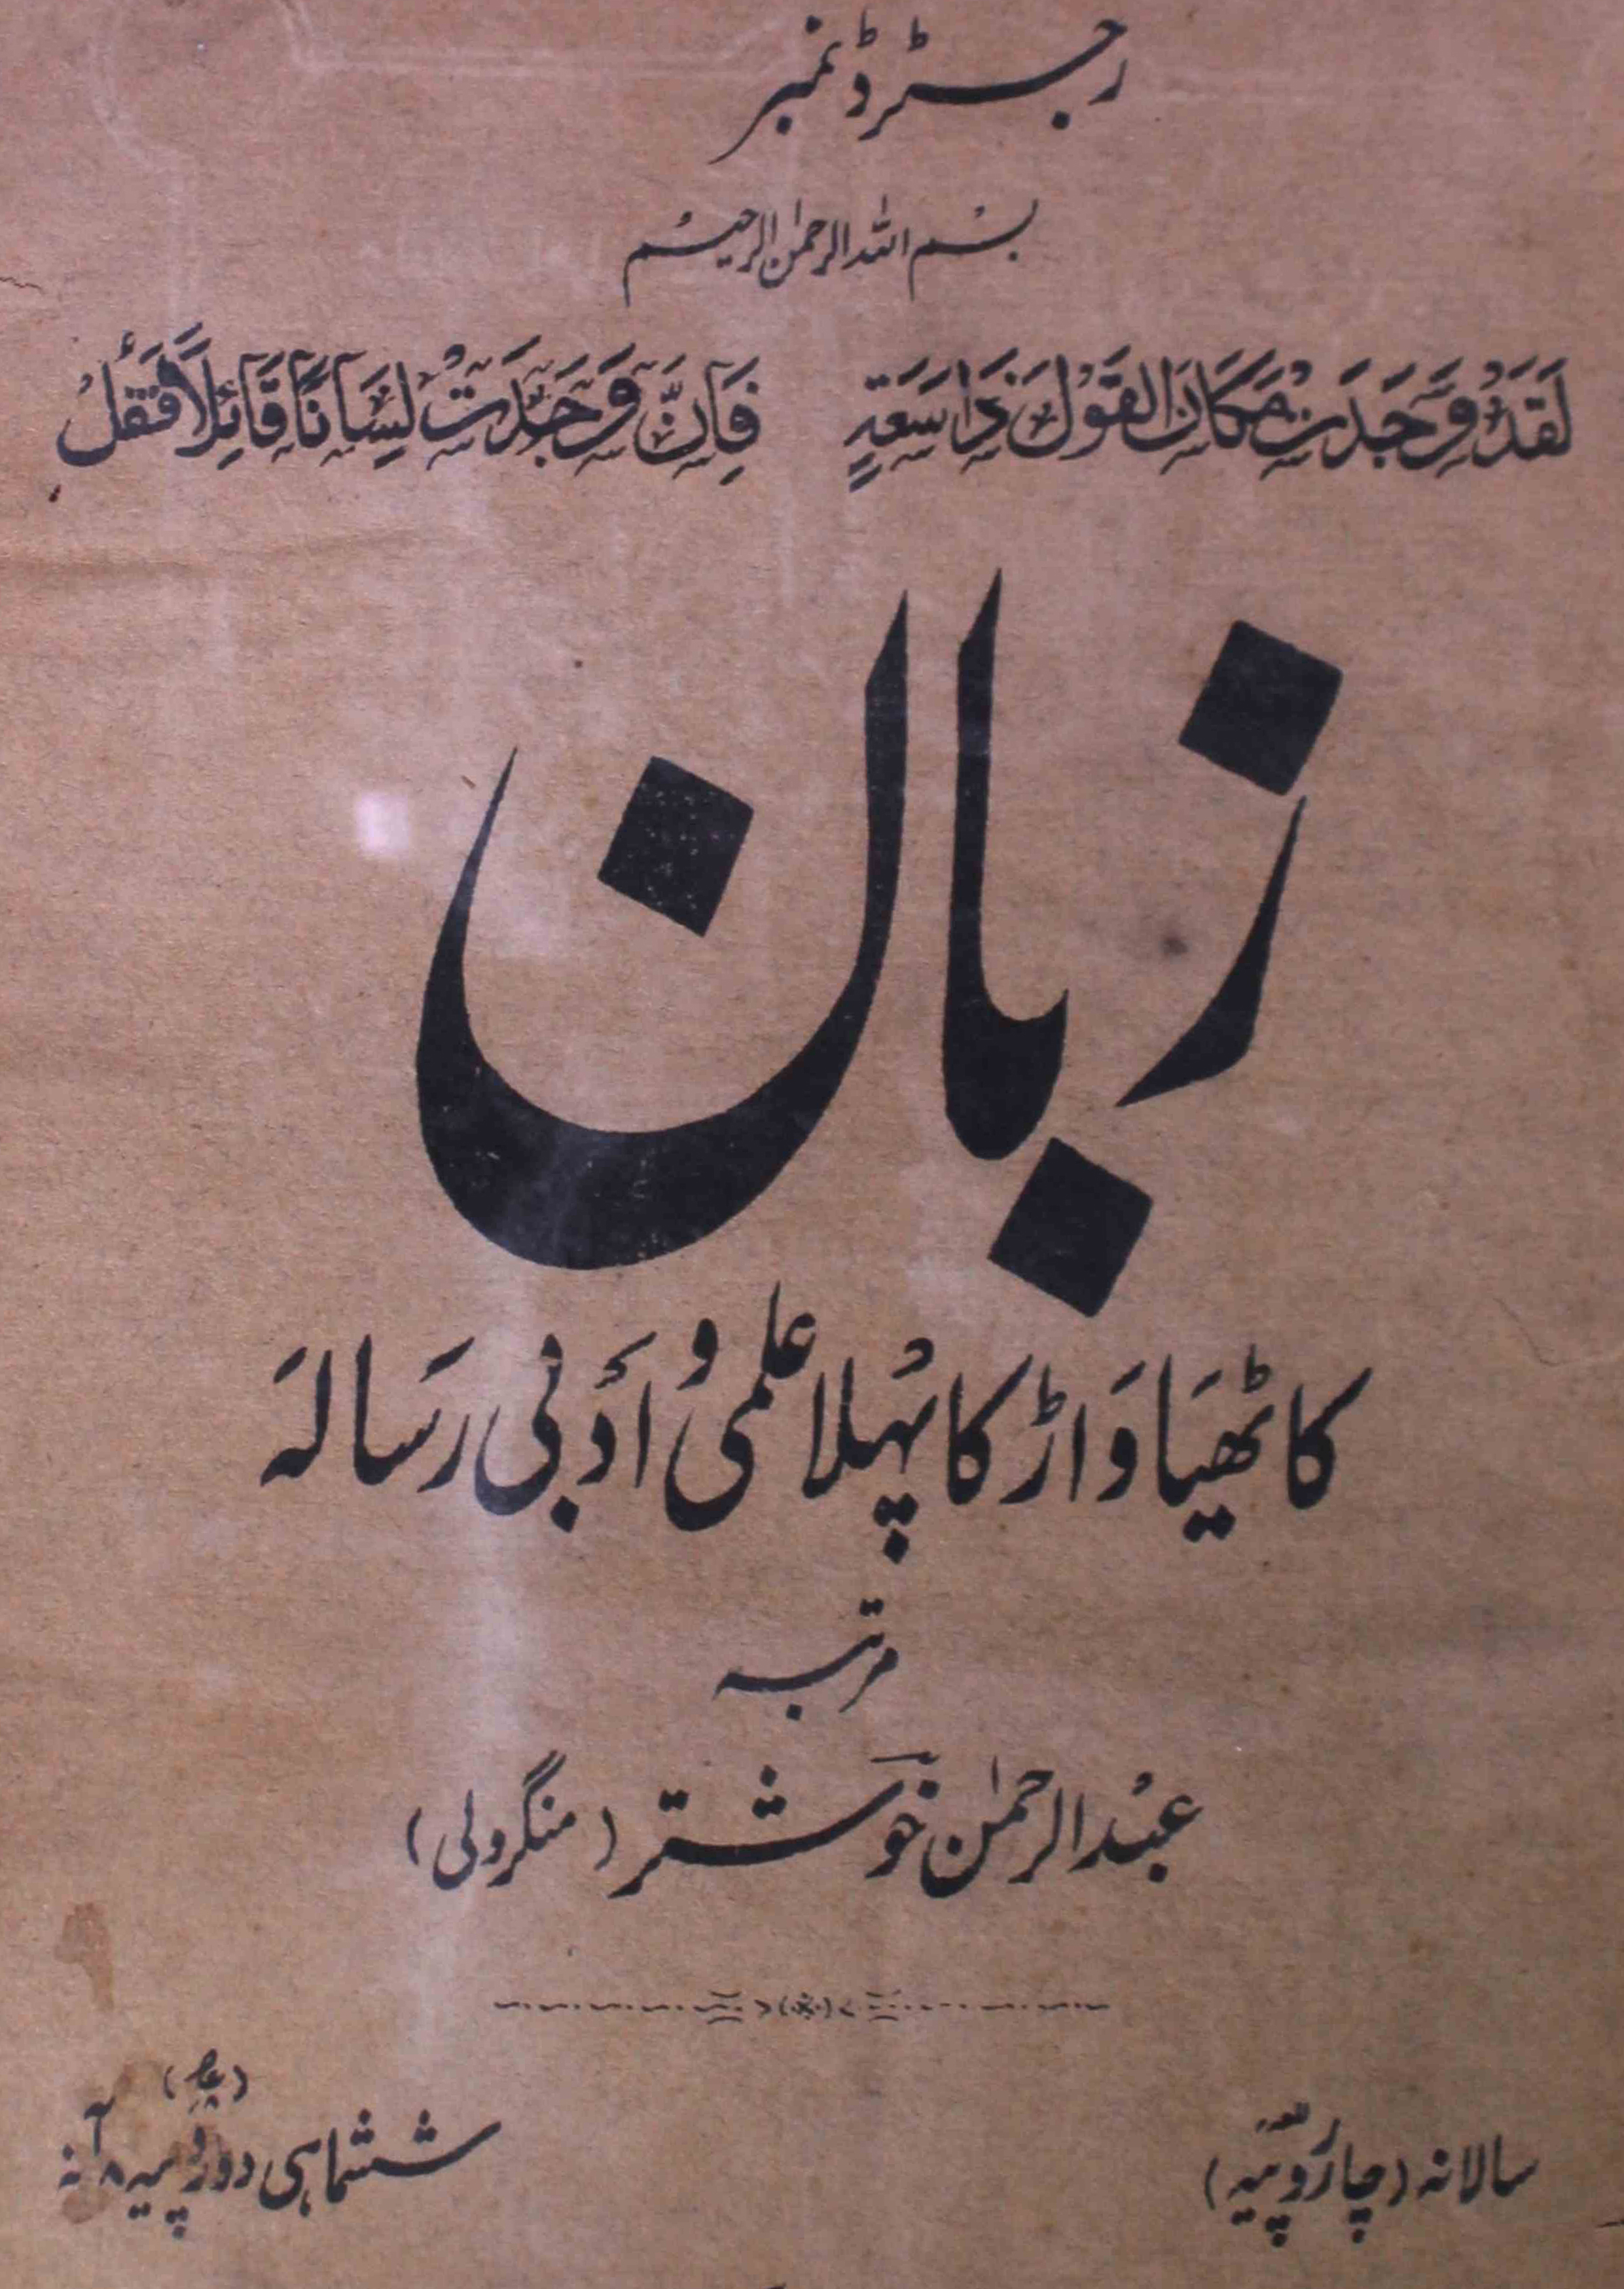 zaban-shumara-number-006-abdur-rahman-khushtar-mangroli-magazines-1